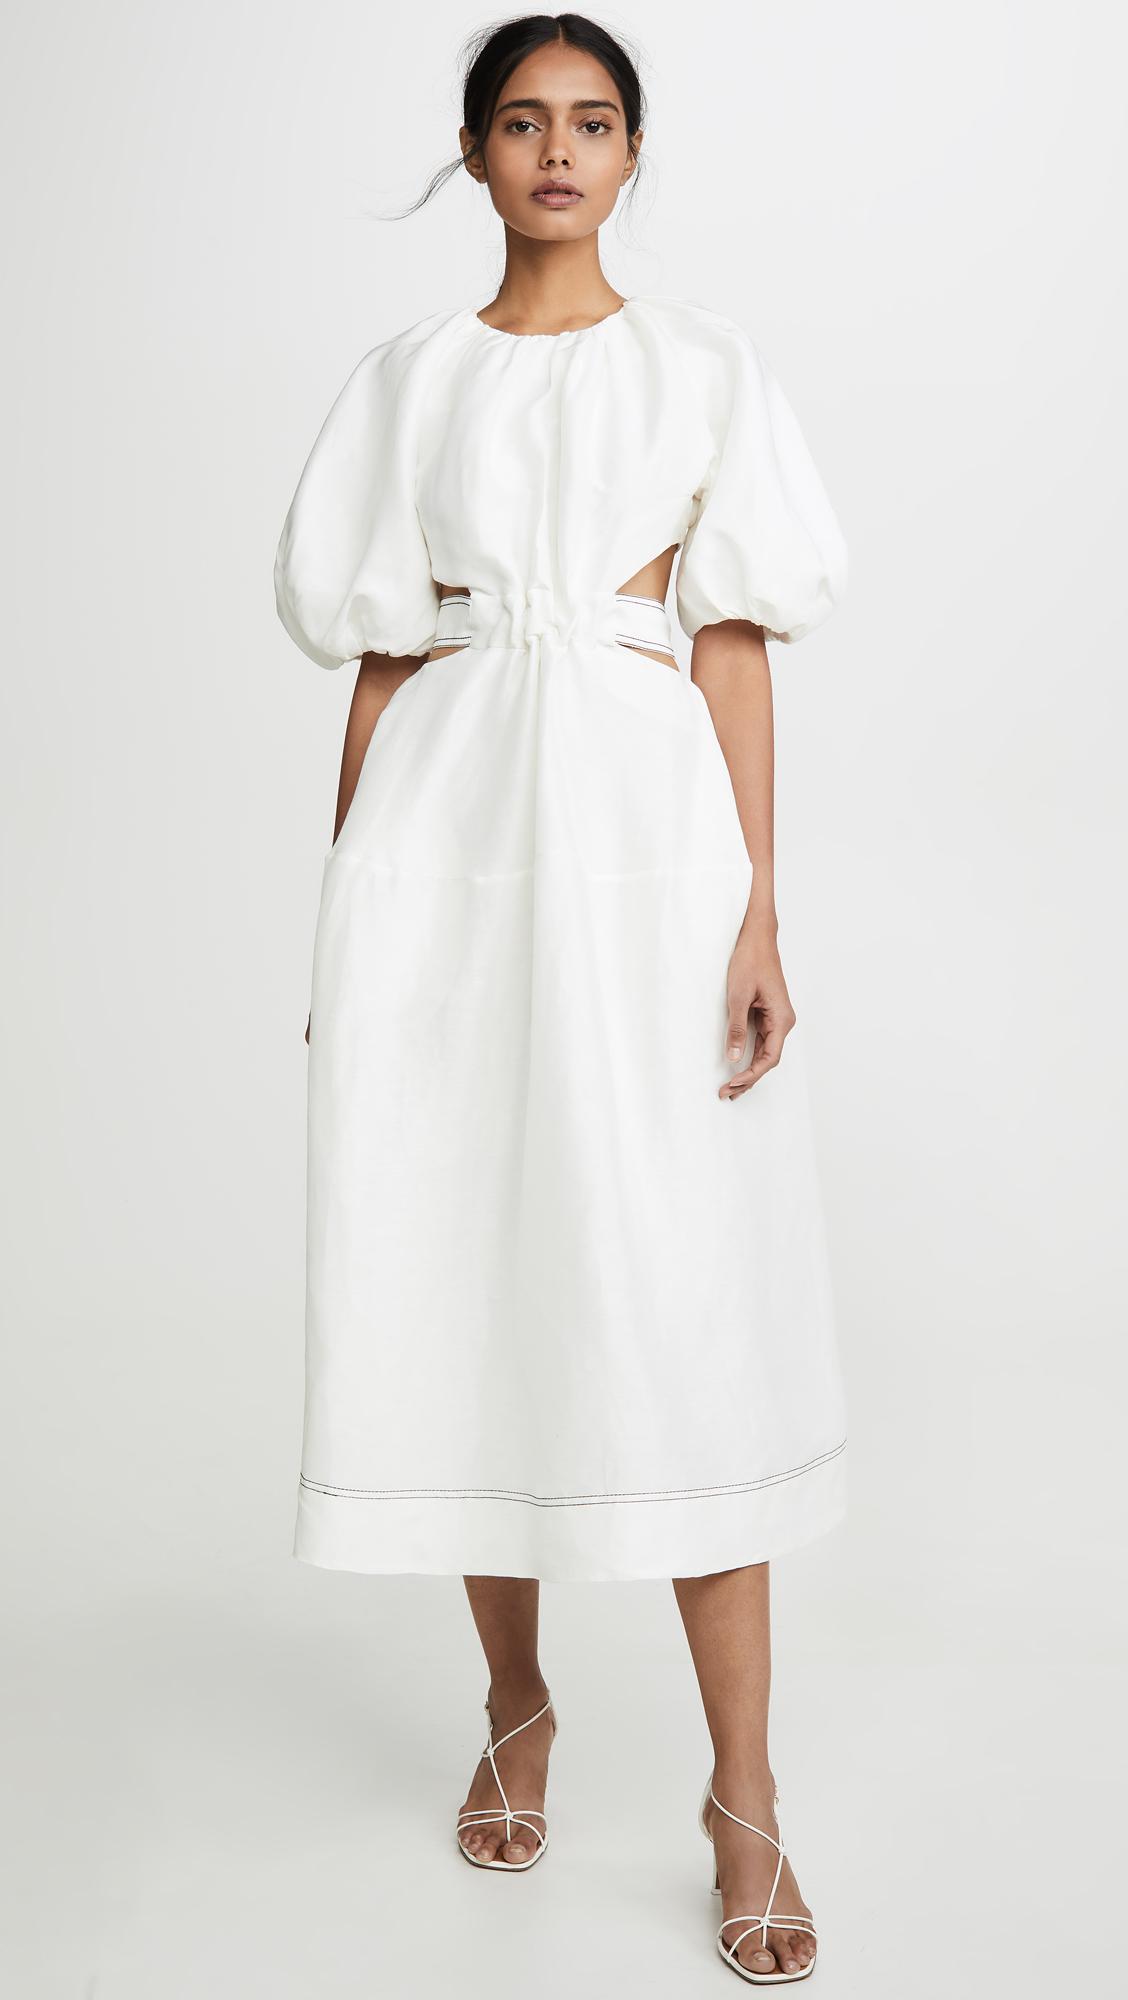 aje white dress Big sale - OFF 65%